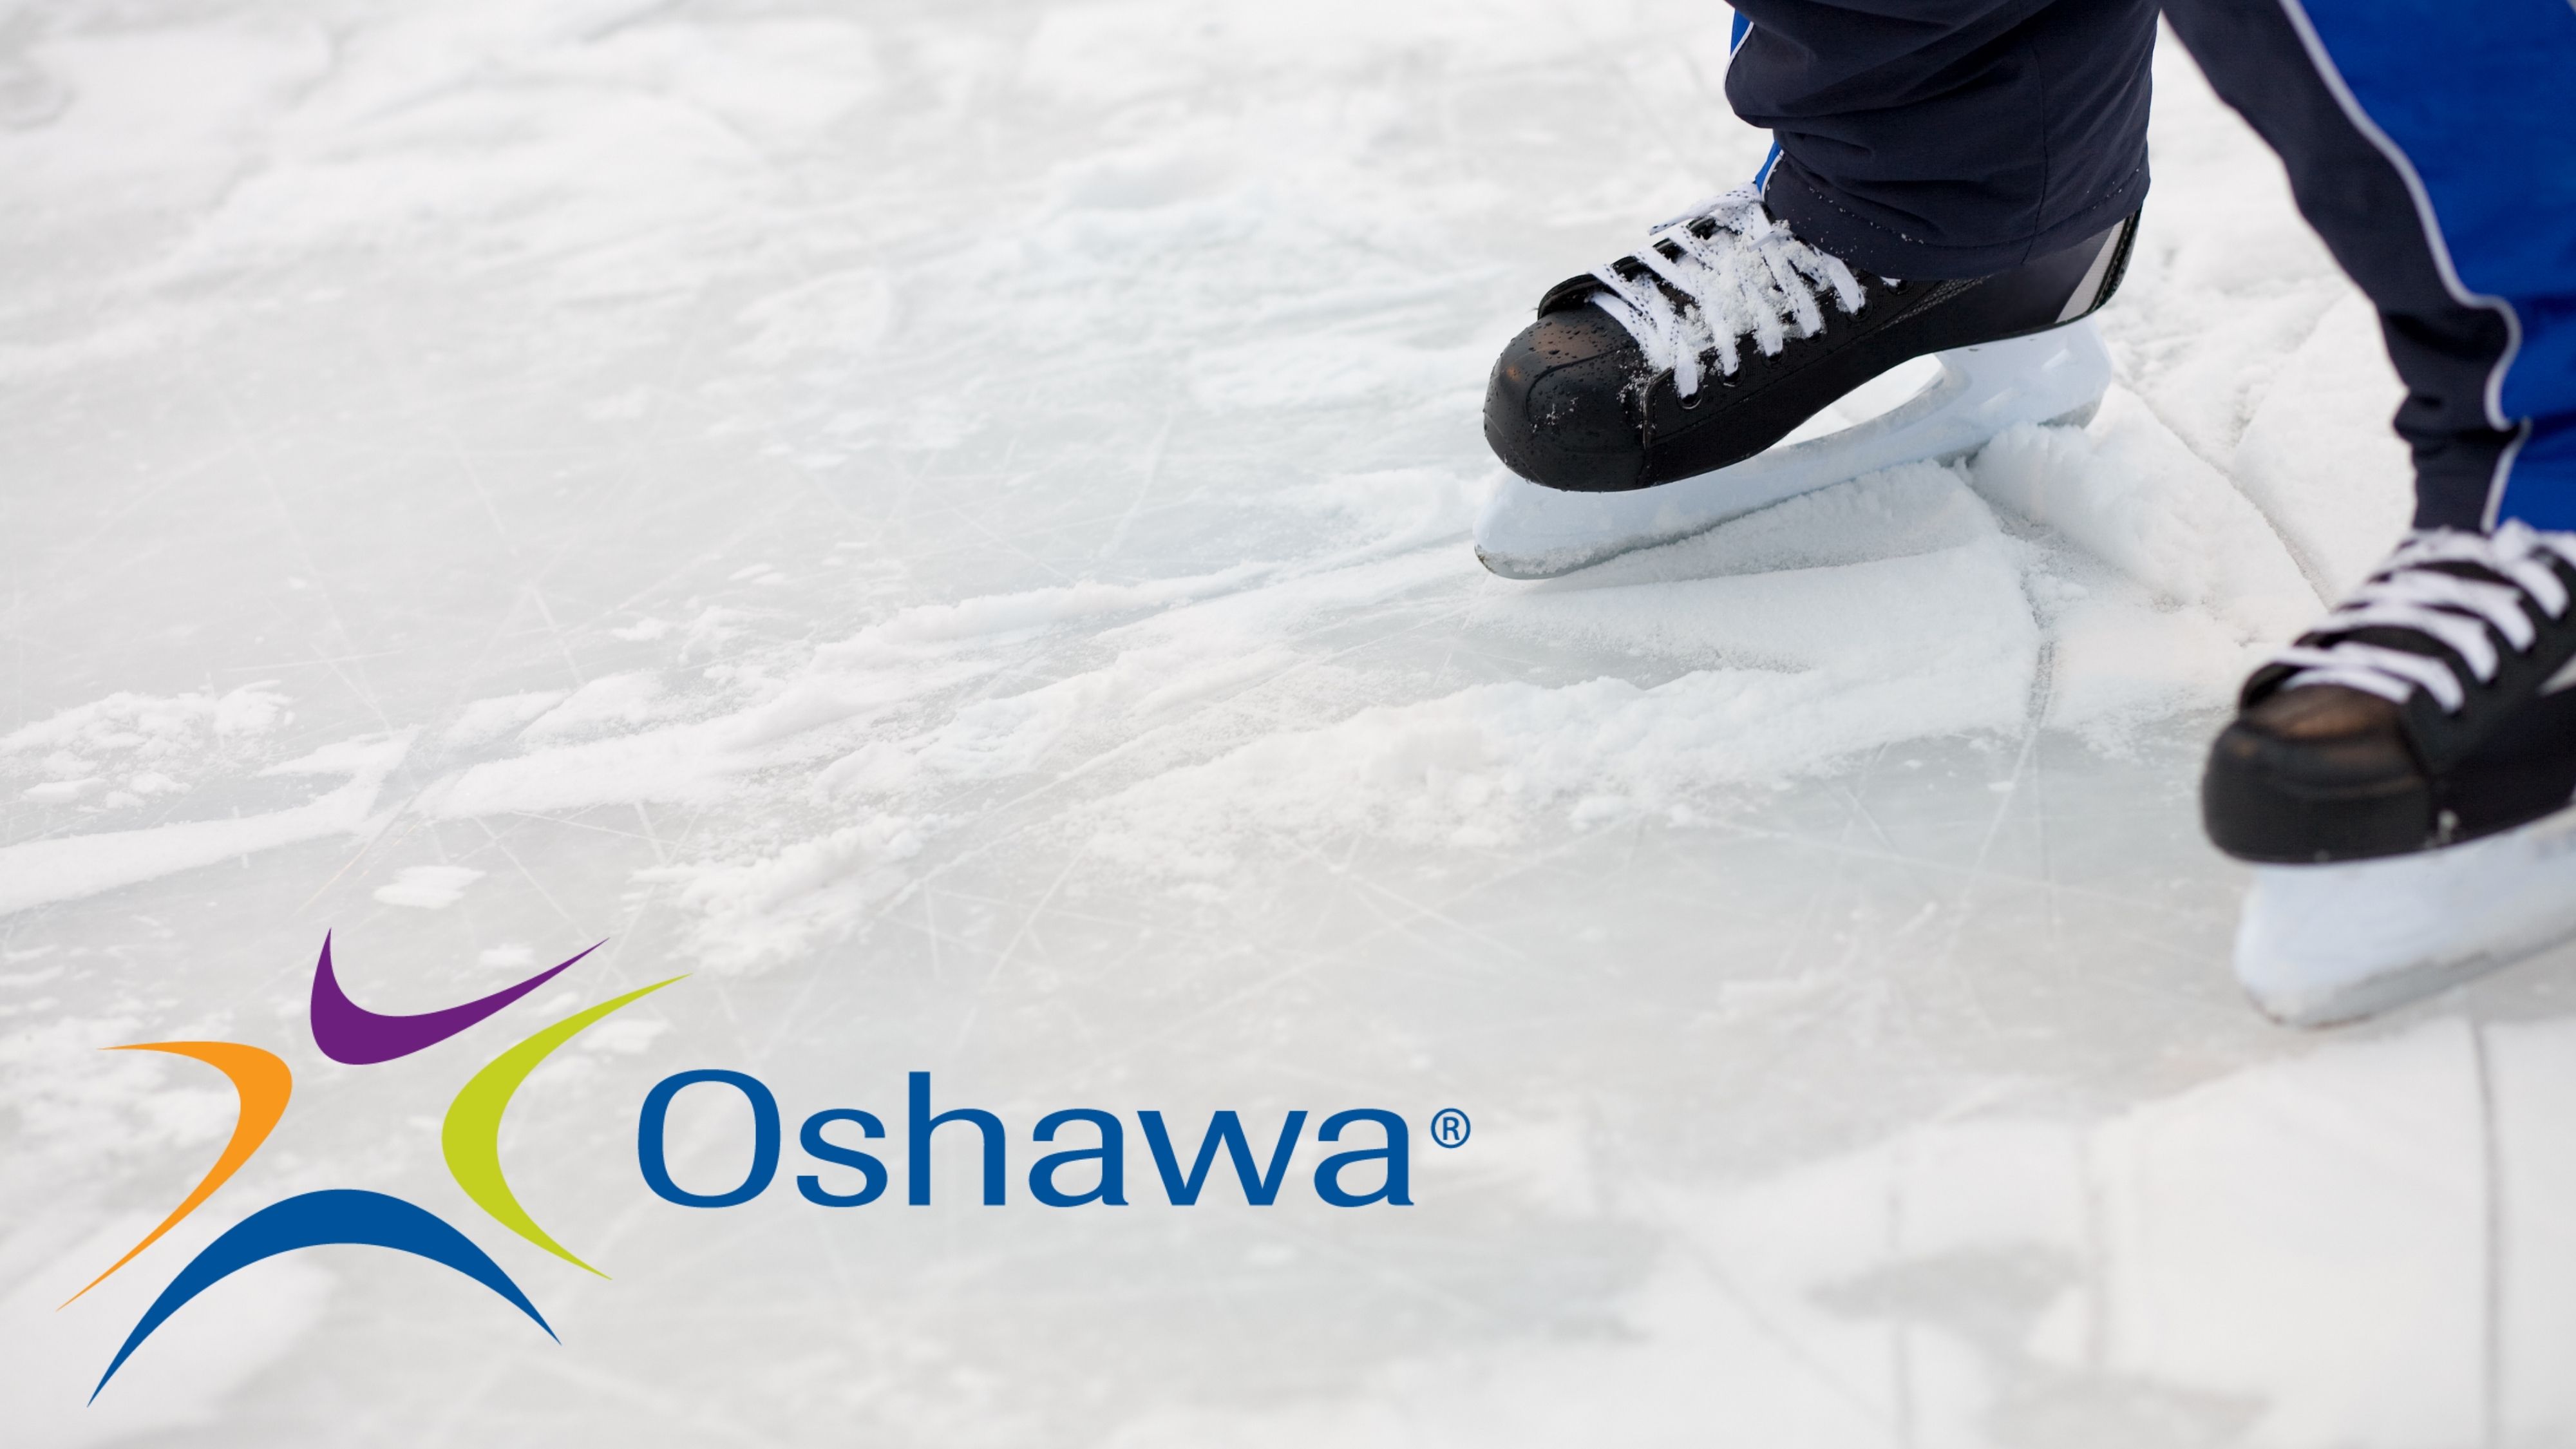 skating image with Oshawa logo